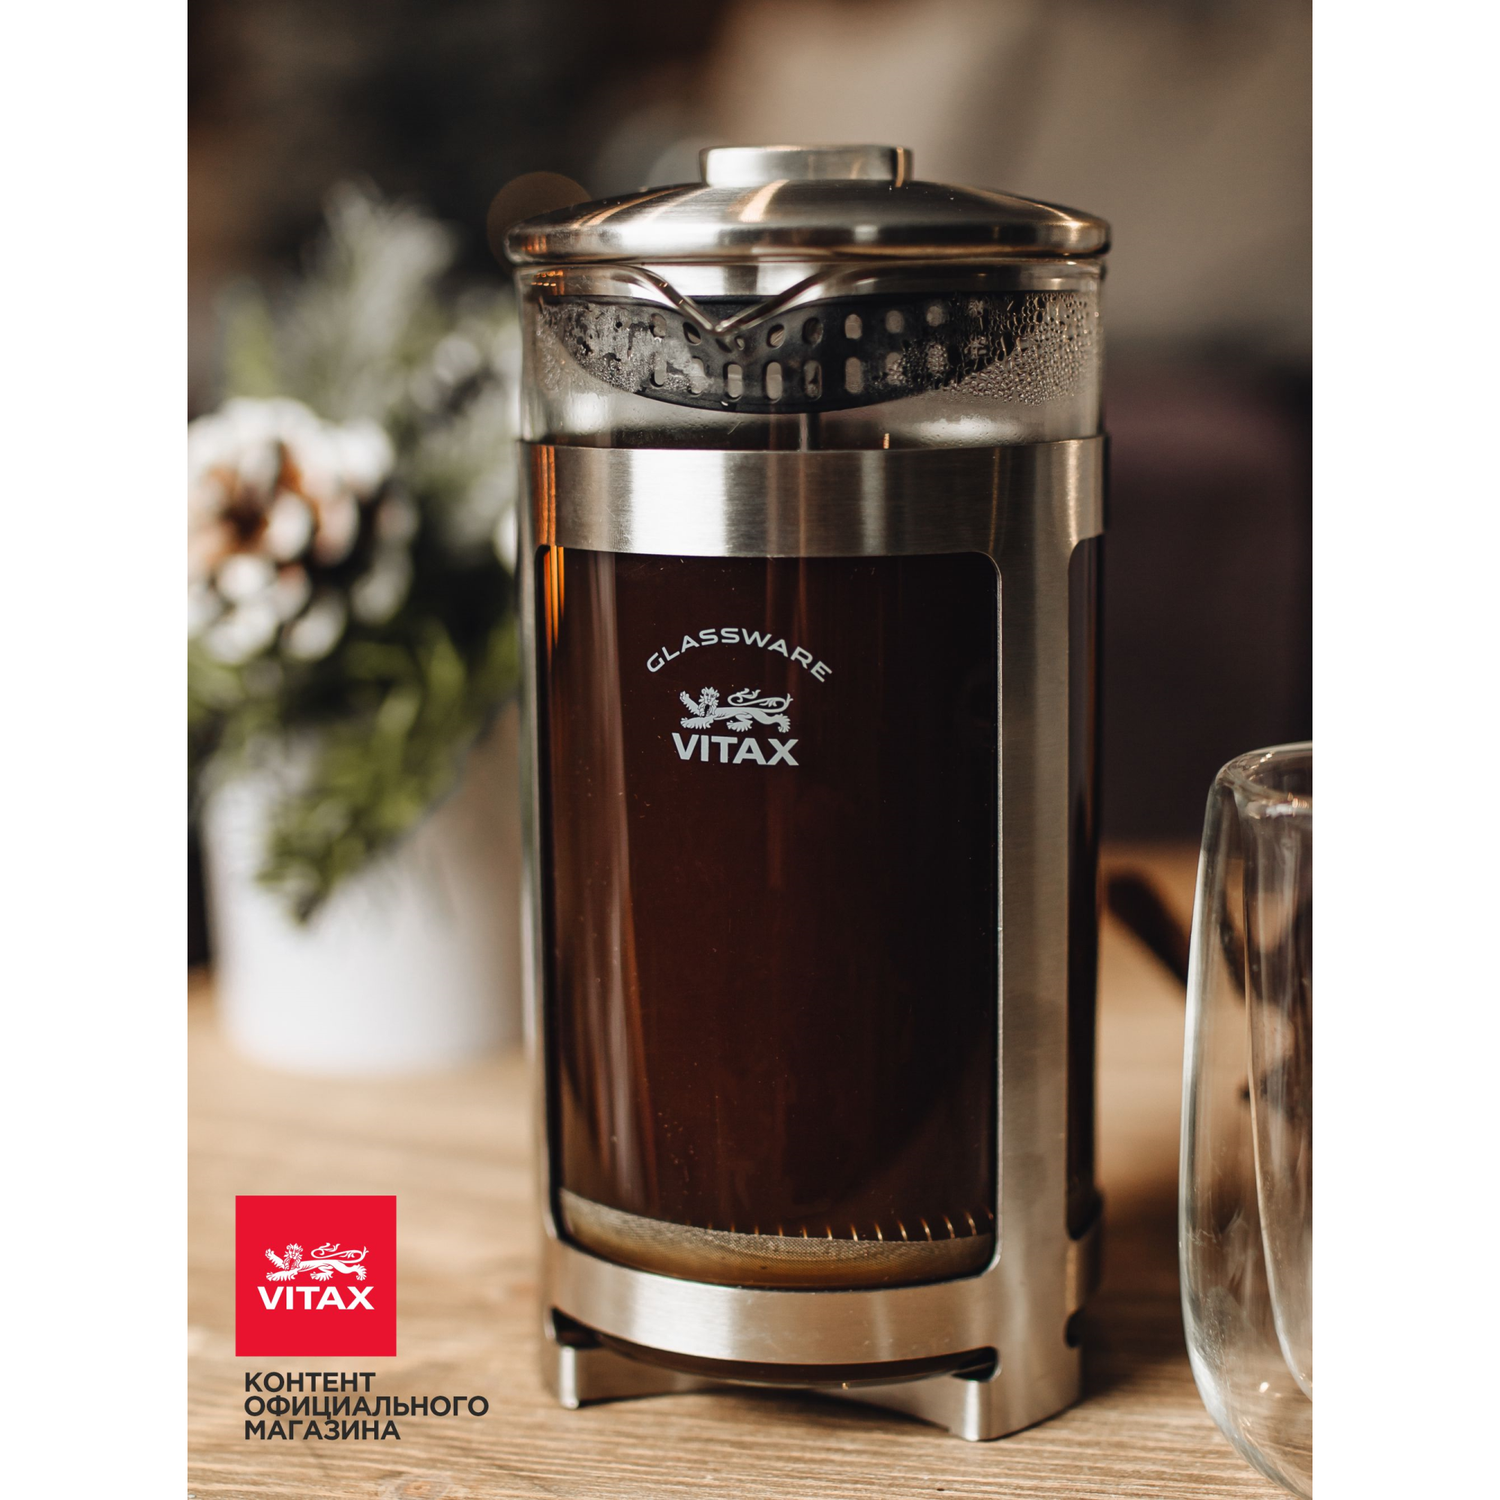 Френч-пресс Vitax объемом 1 литр для заваривания чая и приготовления молотого кофе - фото 9